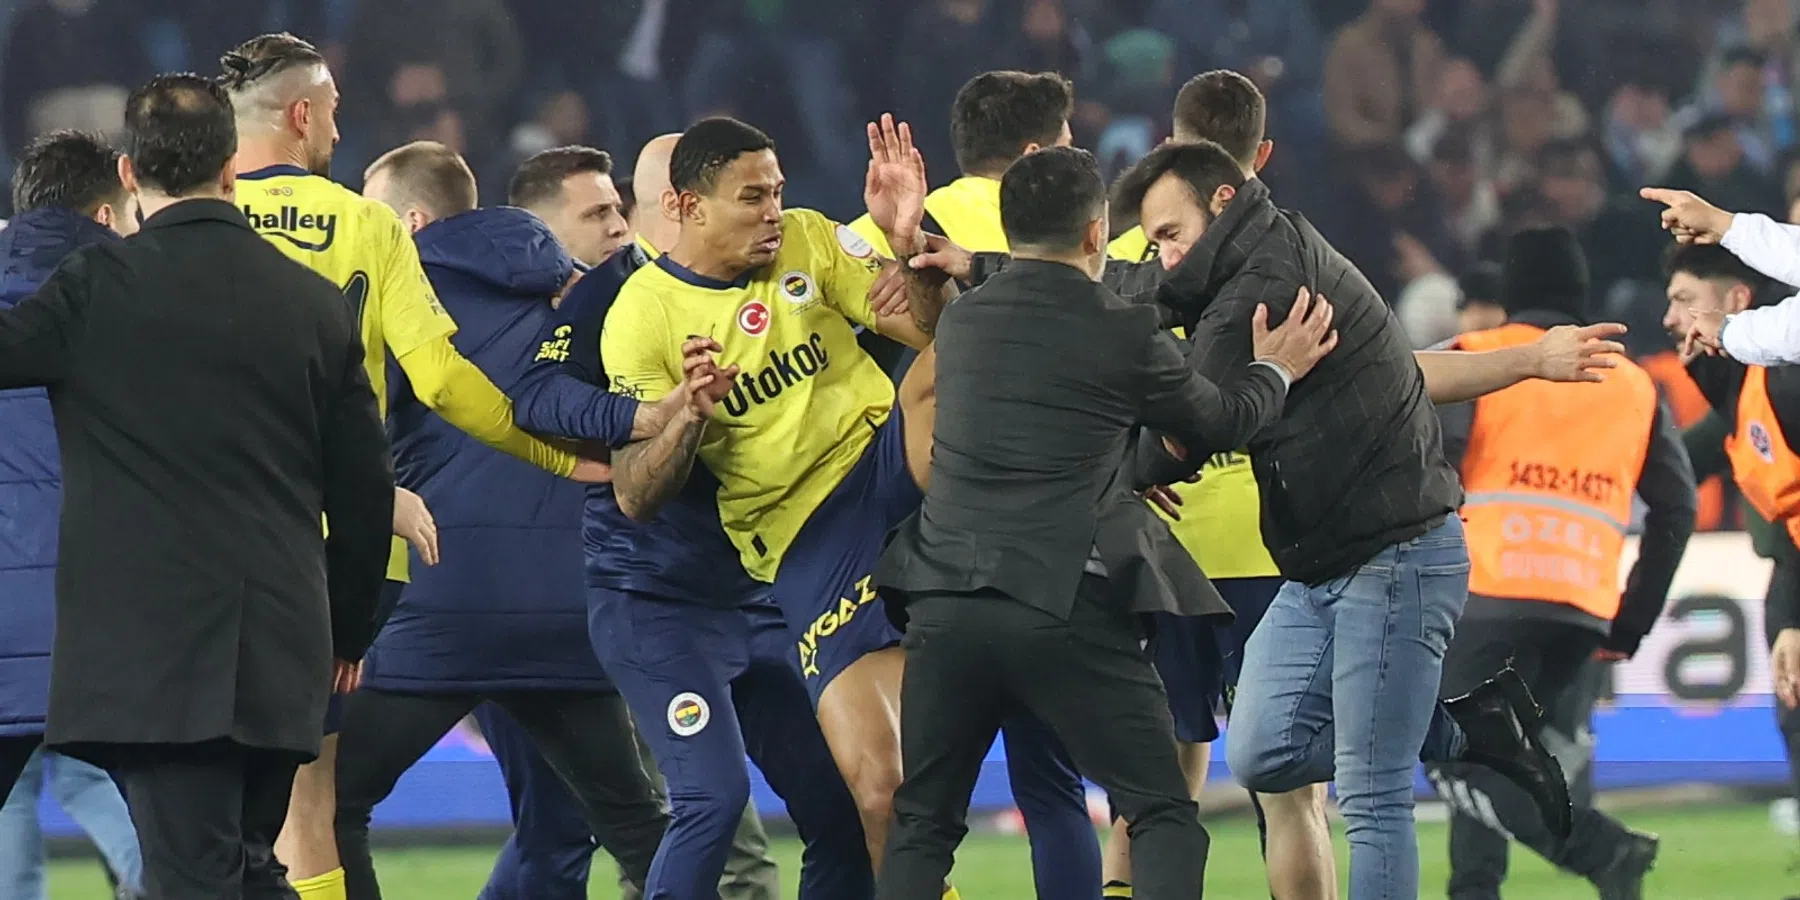 Fenerbahce trekt zich mogelijk terug uit Süper Lig na massale knokpartij